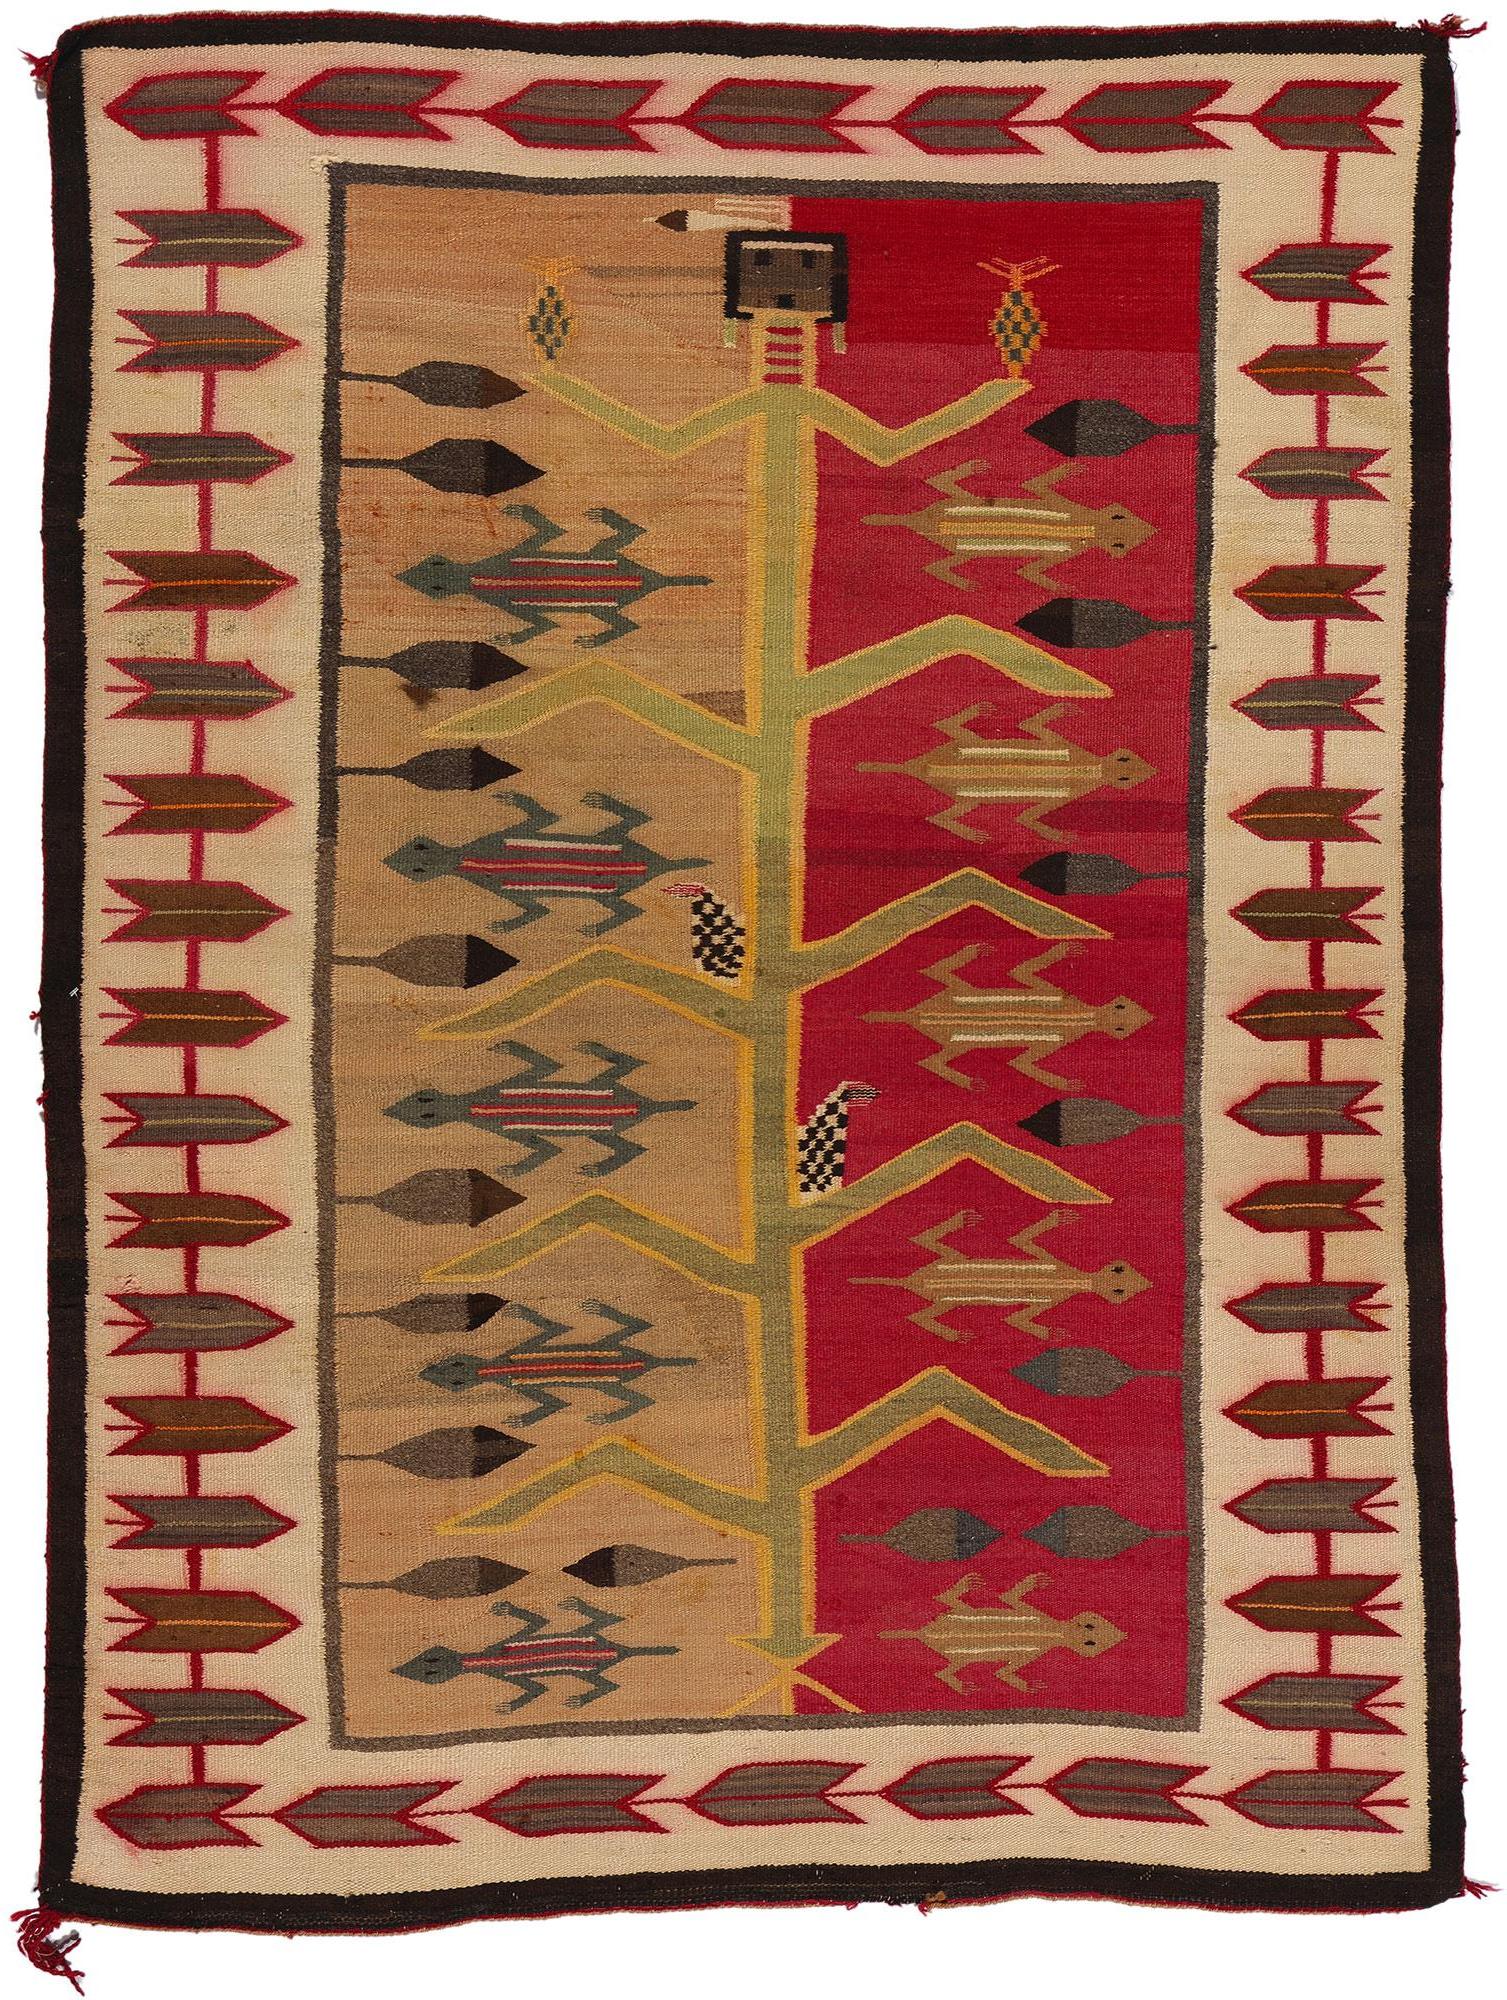 Couverture Navajo ancienne des années 1920 Tree of Life Yei Bi Chai textile amérindien